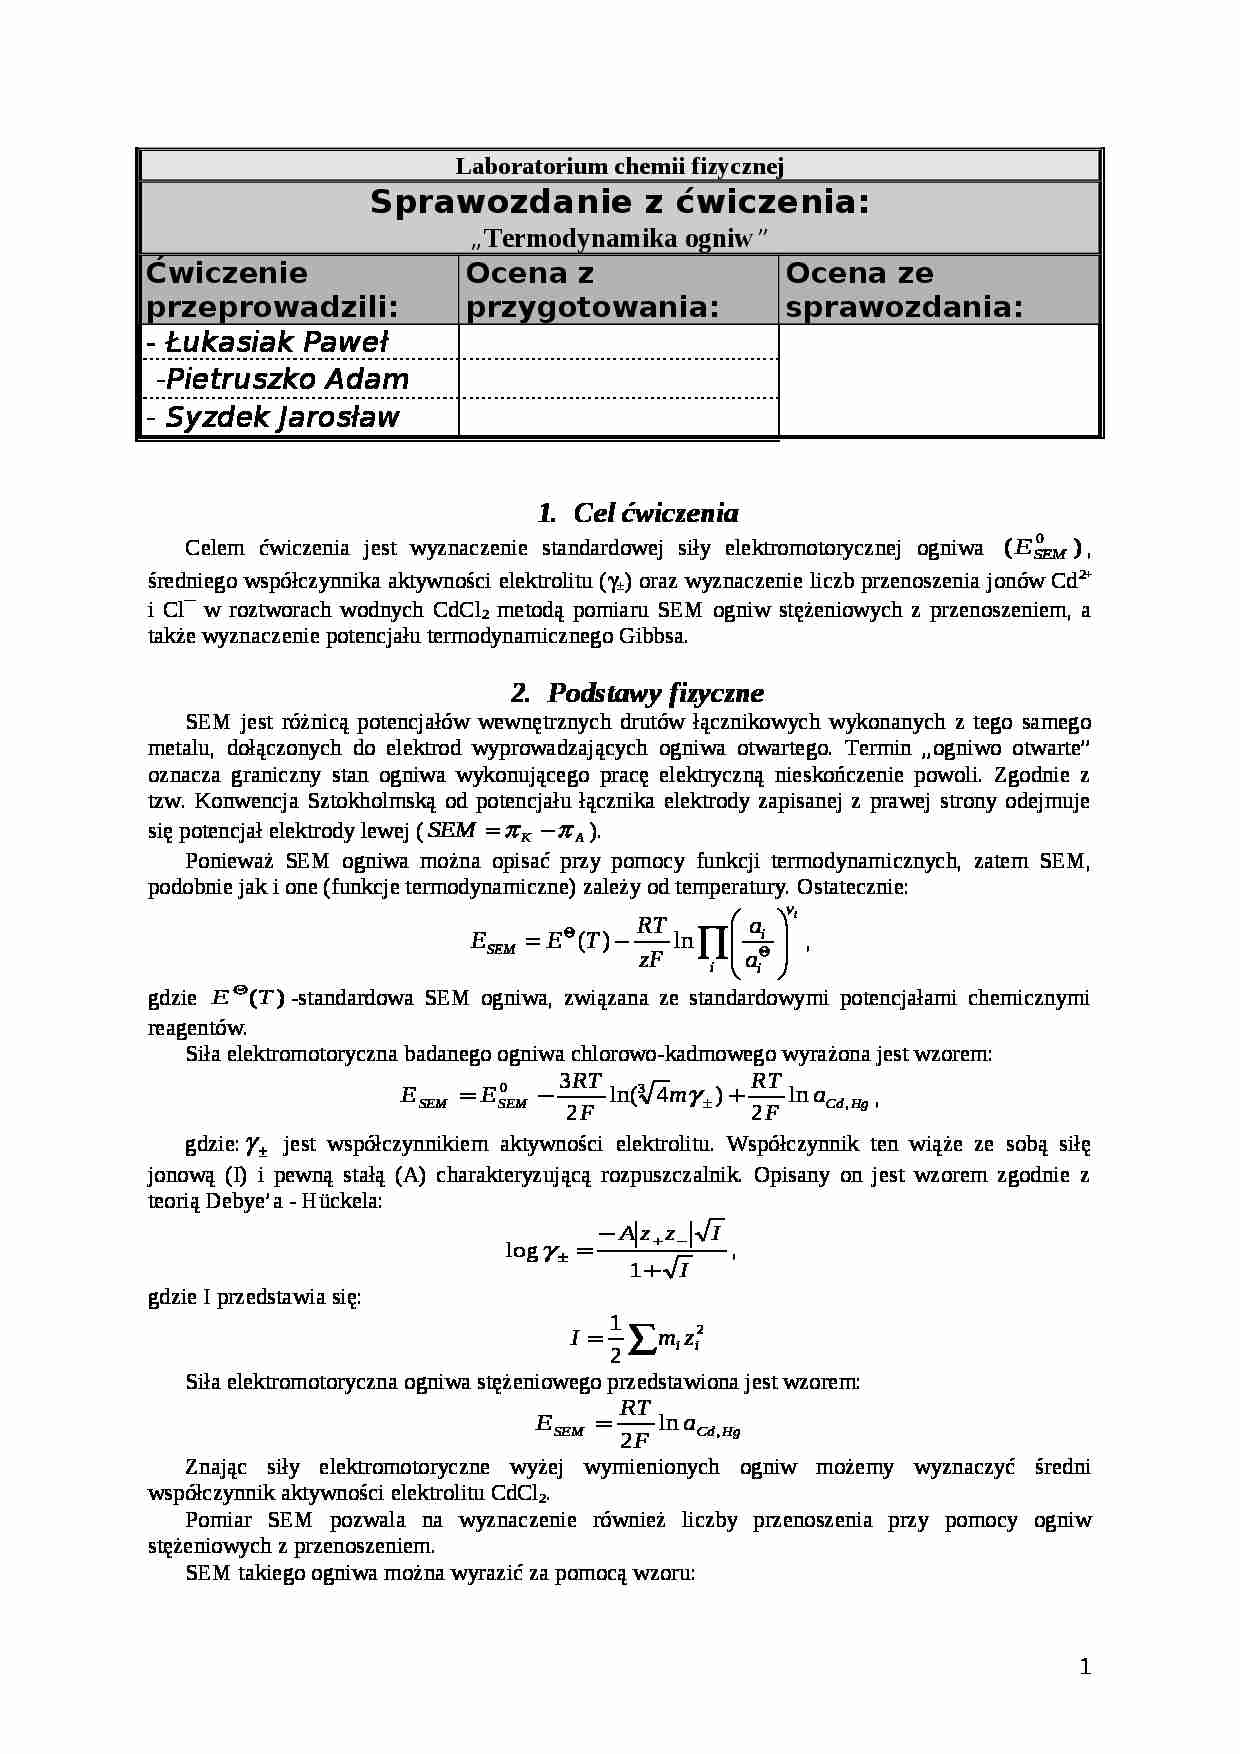 Termodynamika ogniw - sprawozdanie - strona 1